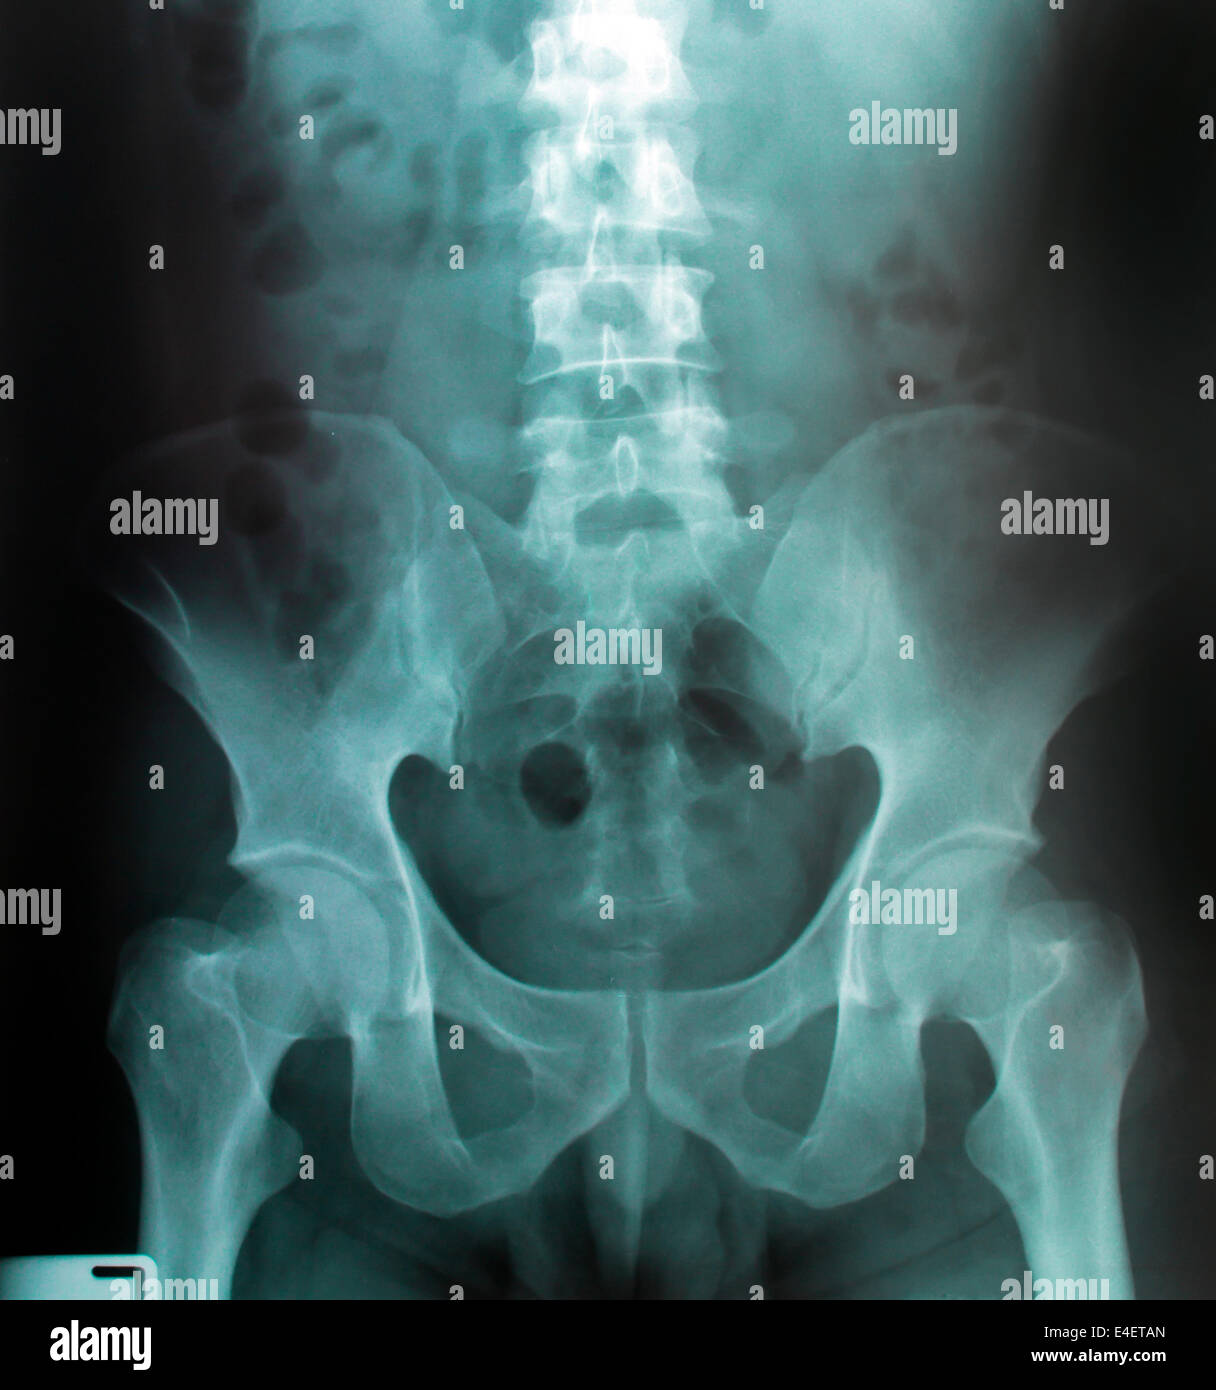 Immagine a raggi X di umana per una diagnosi medica Foto Stock